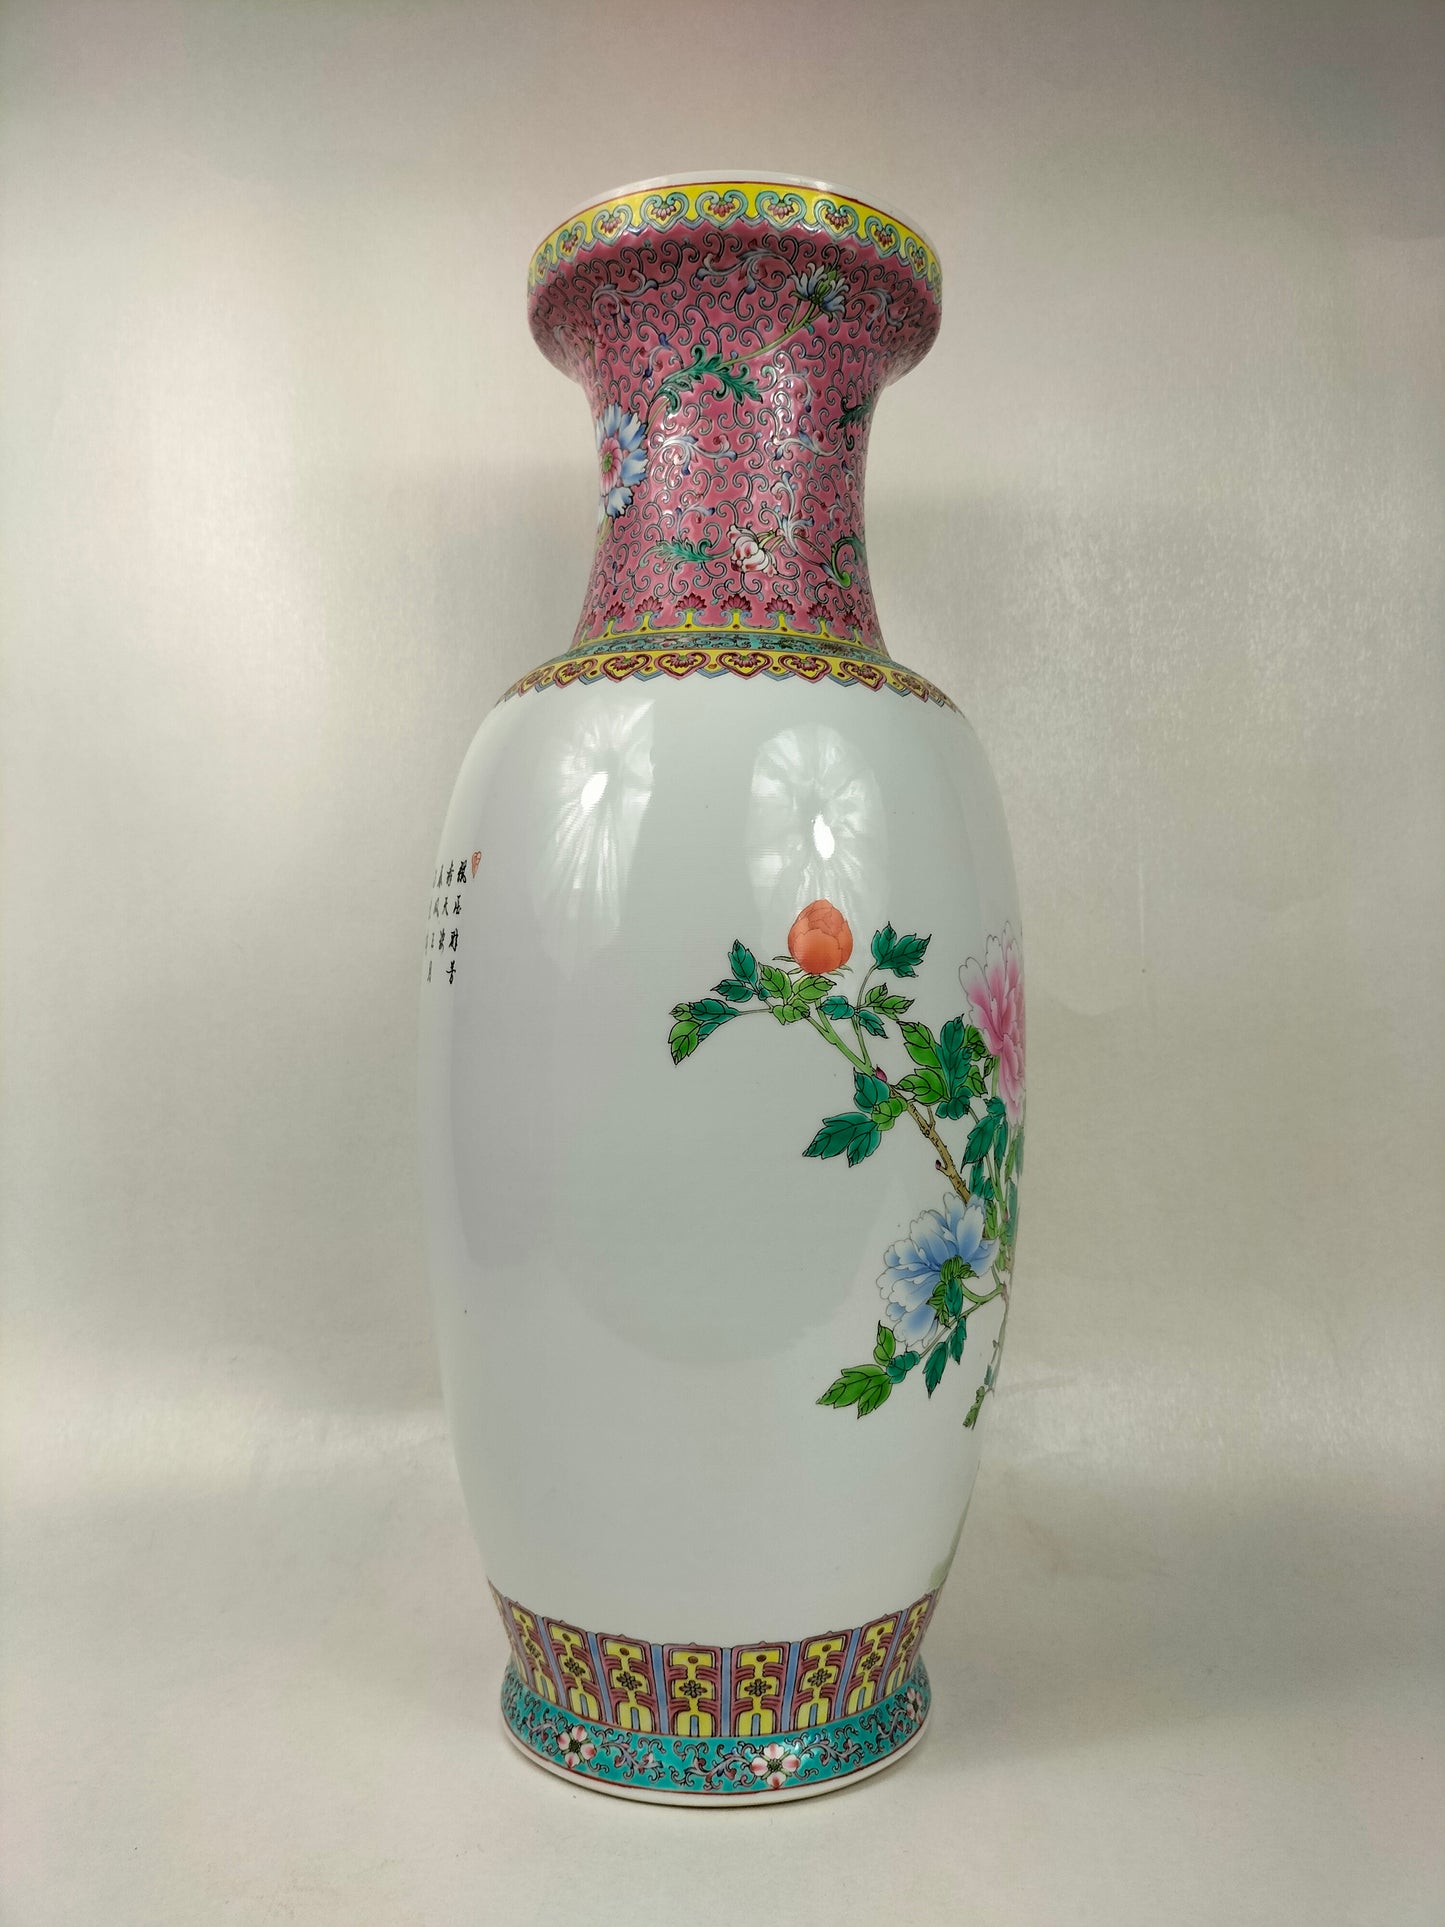 Bình hoa hồng gia đình lớn của Trung Quốc được trang trí bằng hoa // Jingdezhen - thế kỷ 20